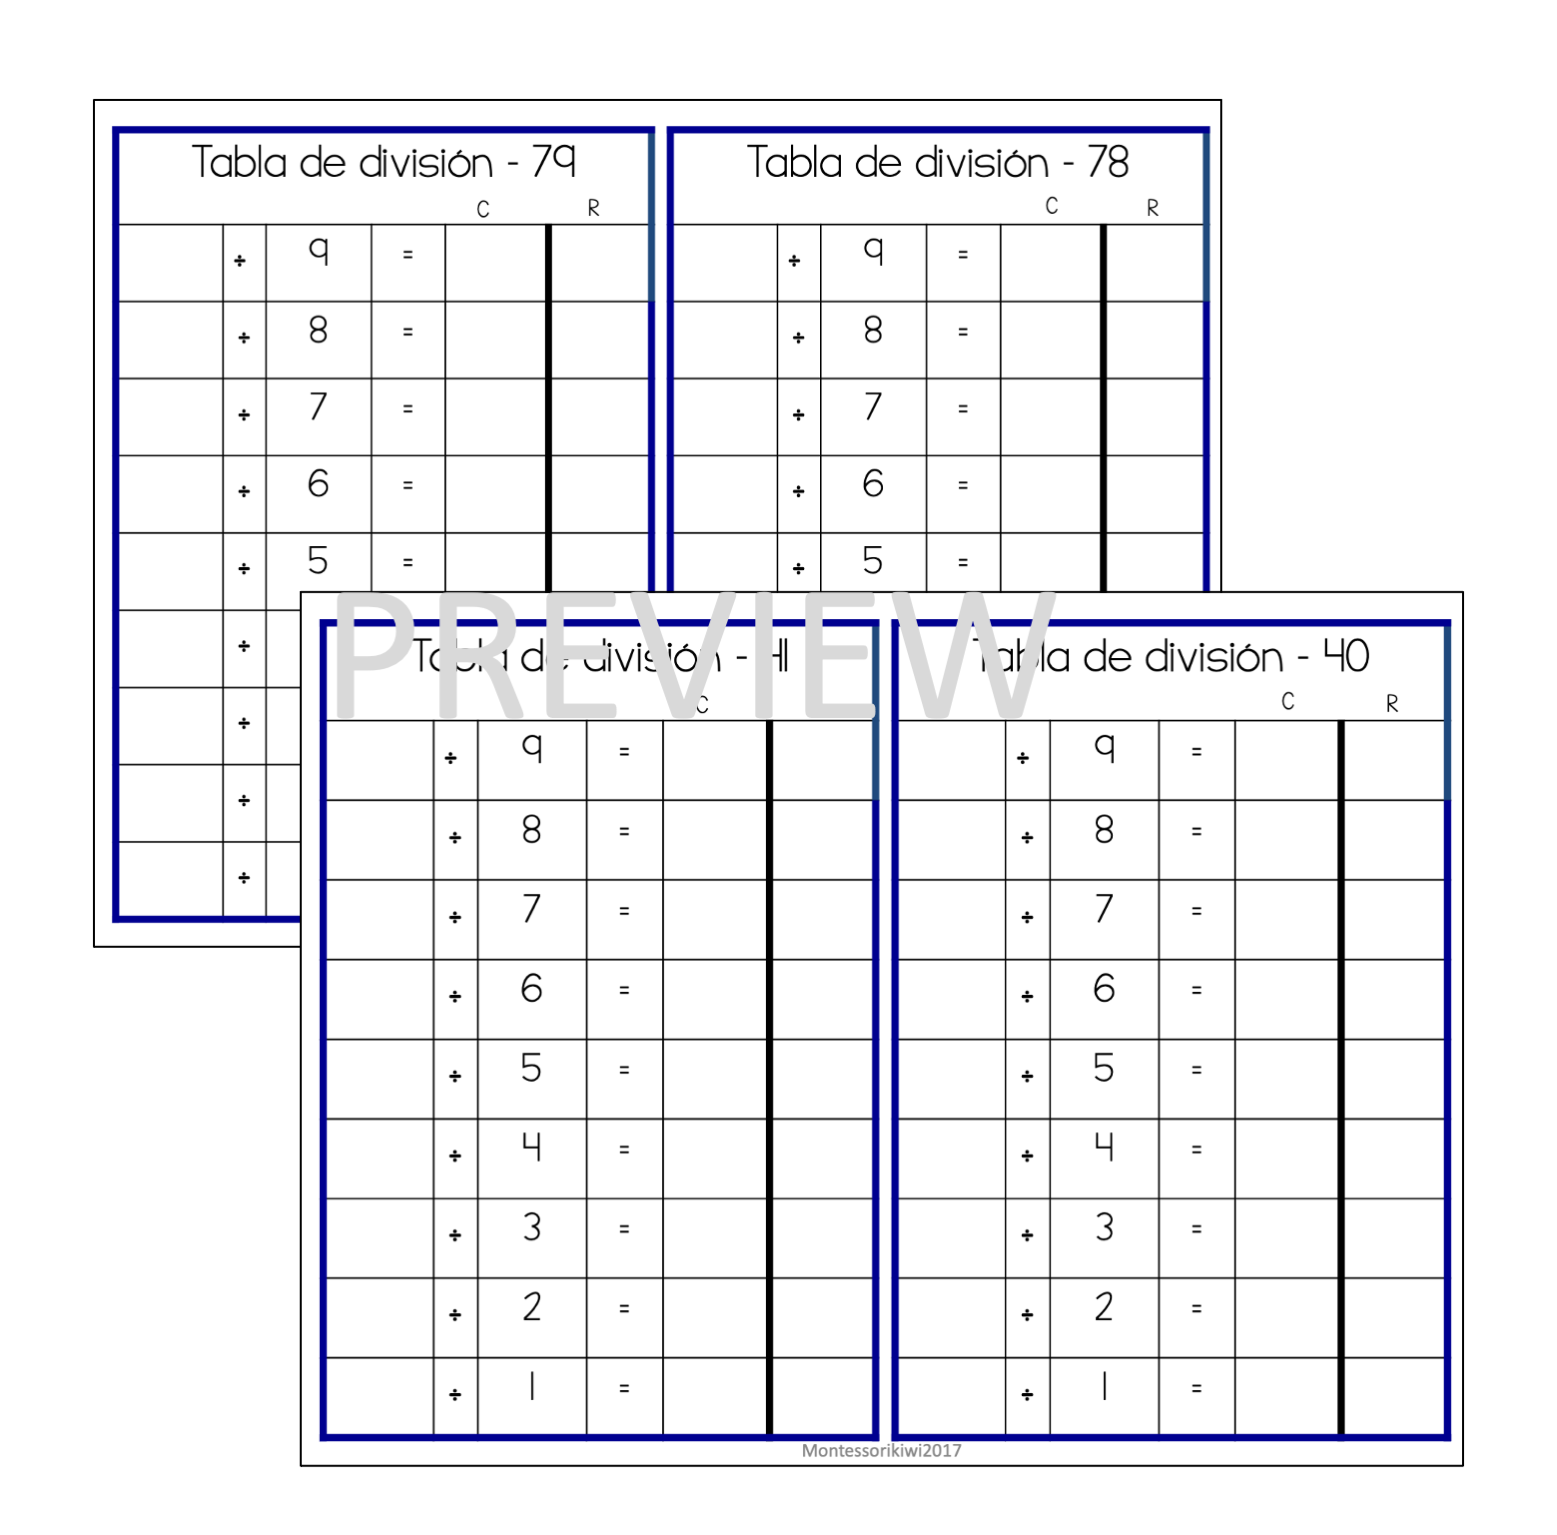 Tablas de división (division chart tables) - montessorikiwi